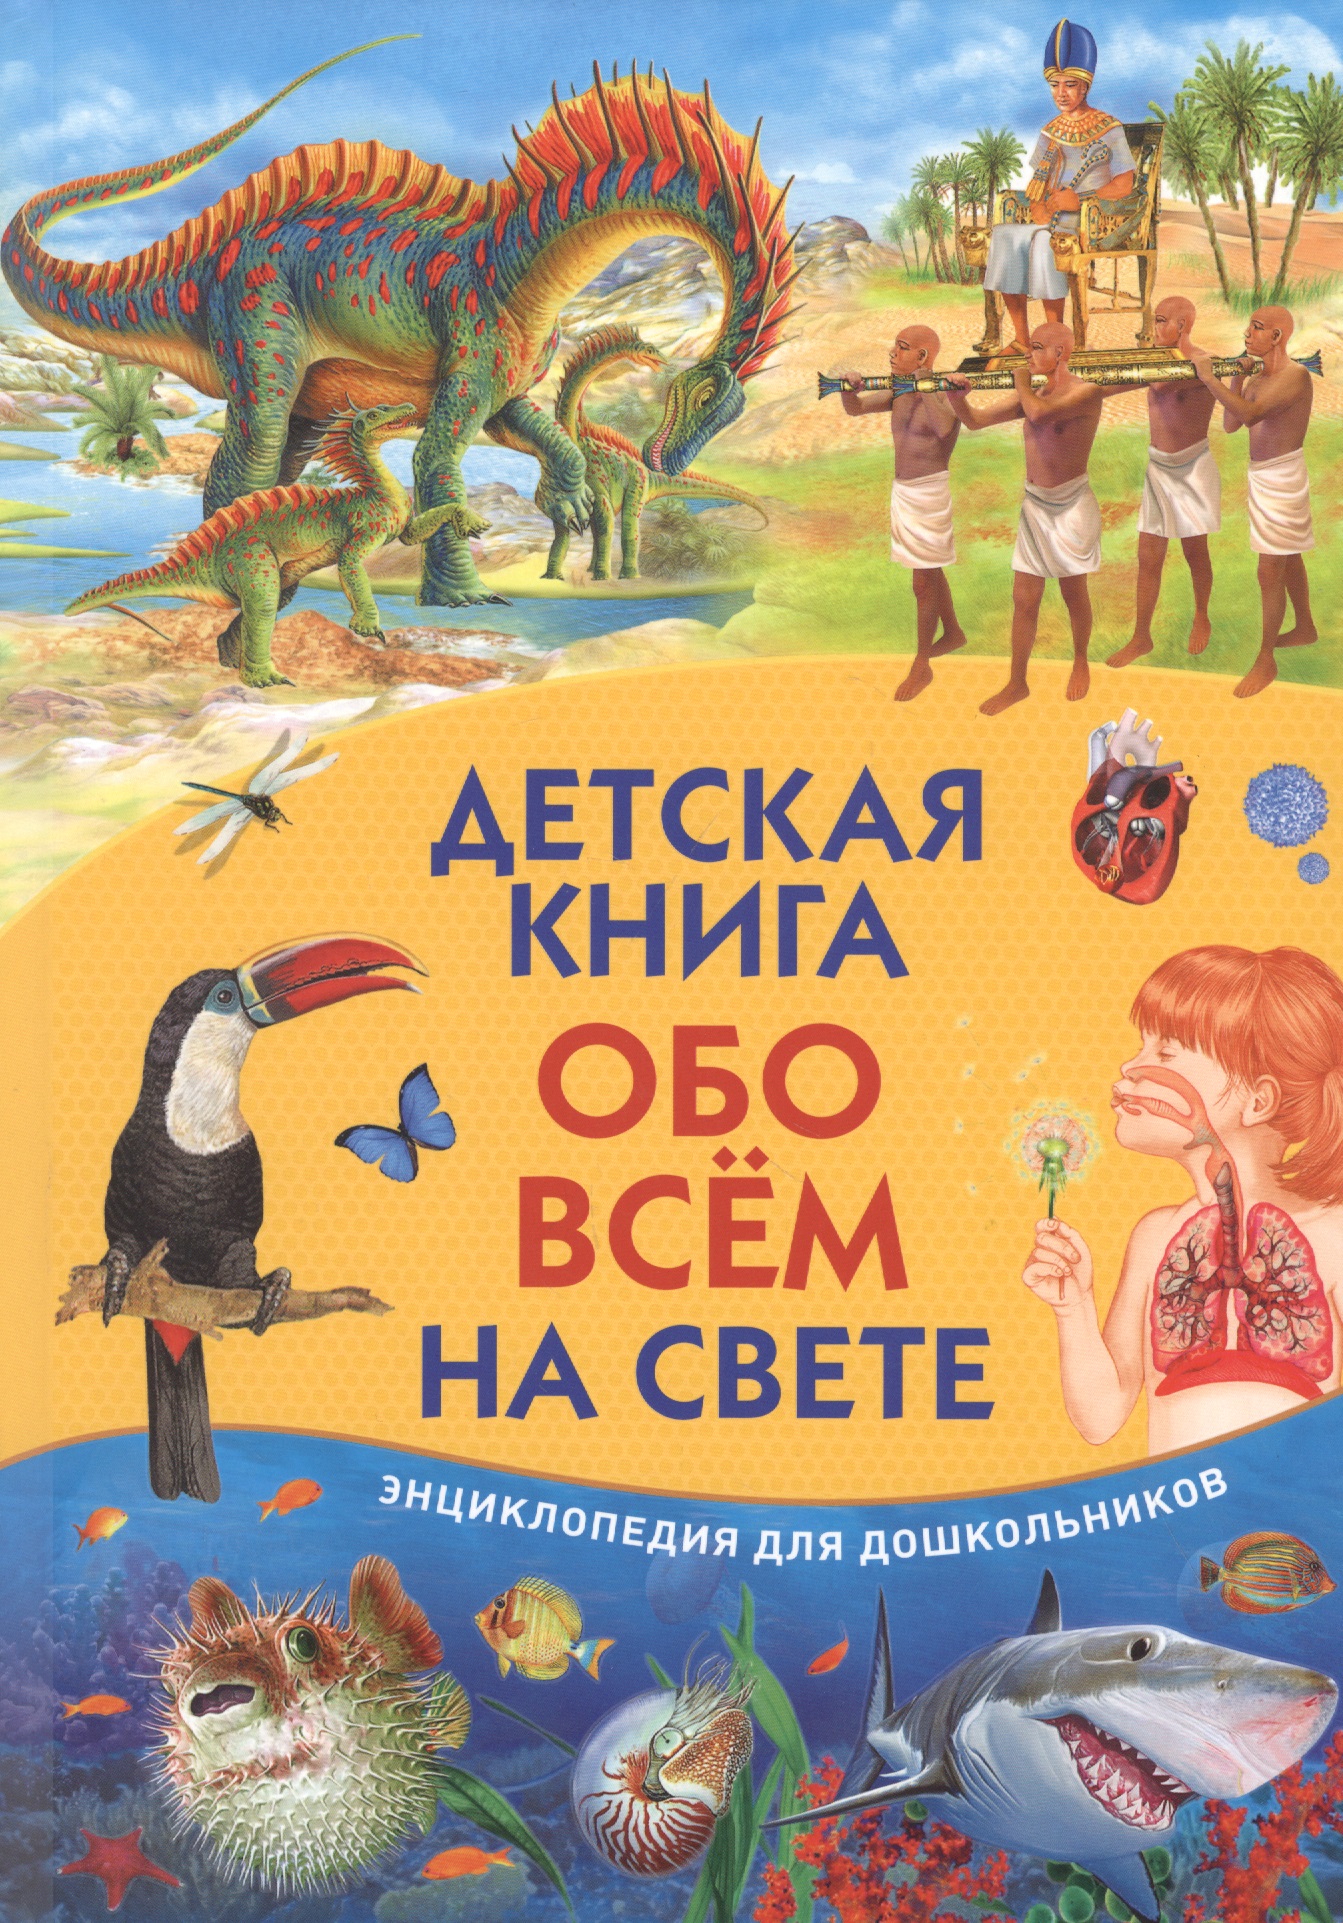 Детская книга обо всем на свете. Энциклопедия для дошкольников